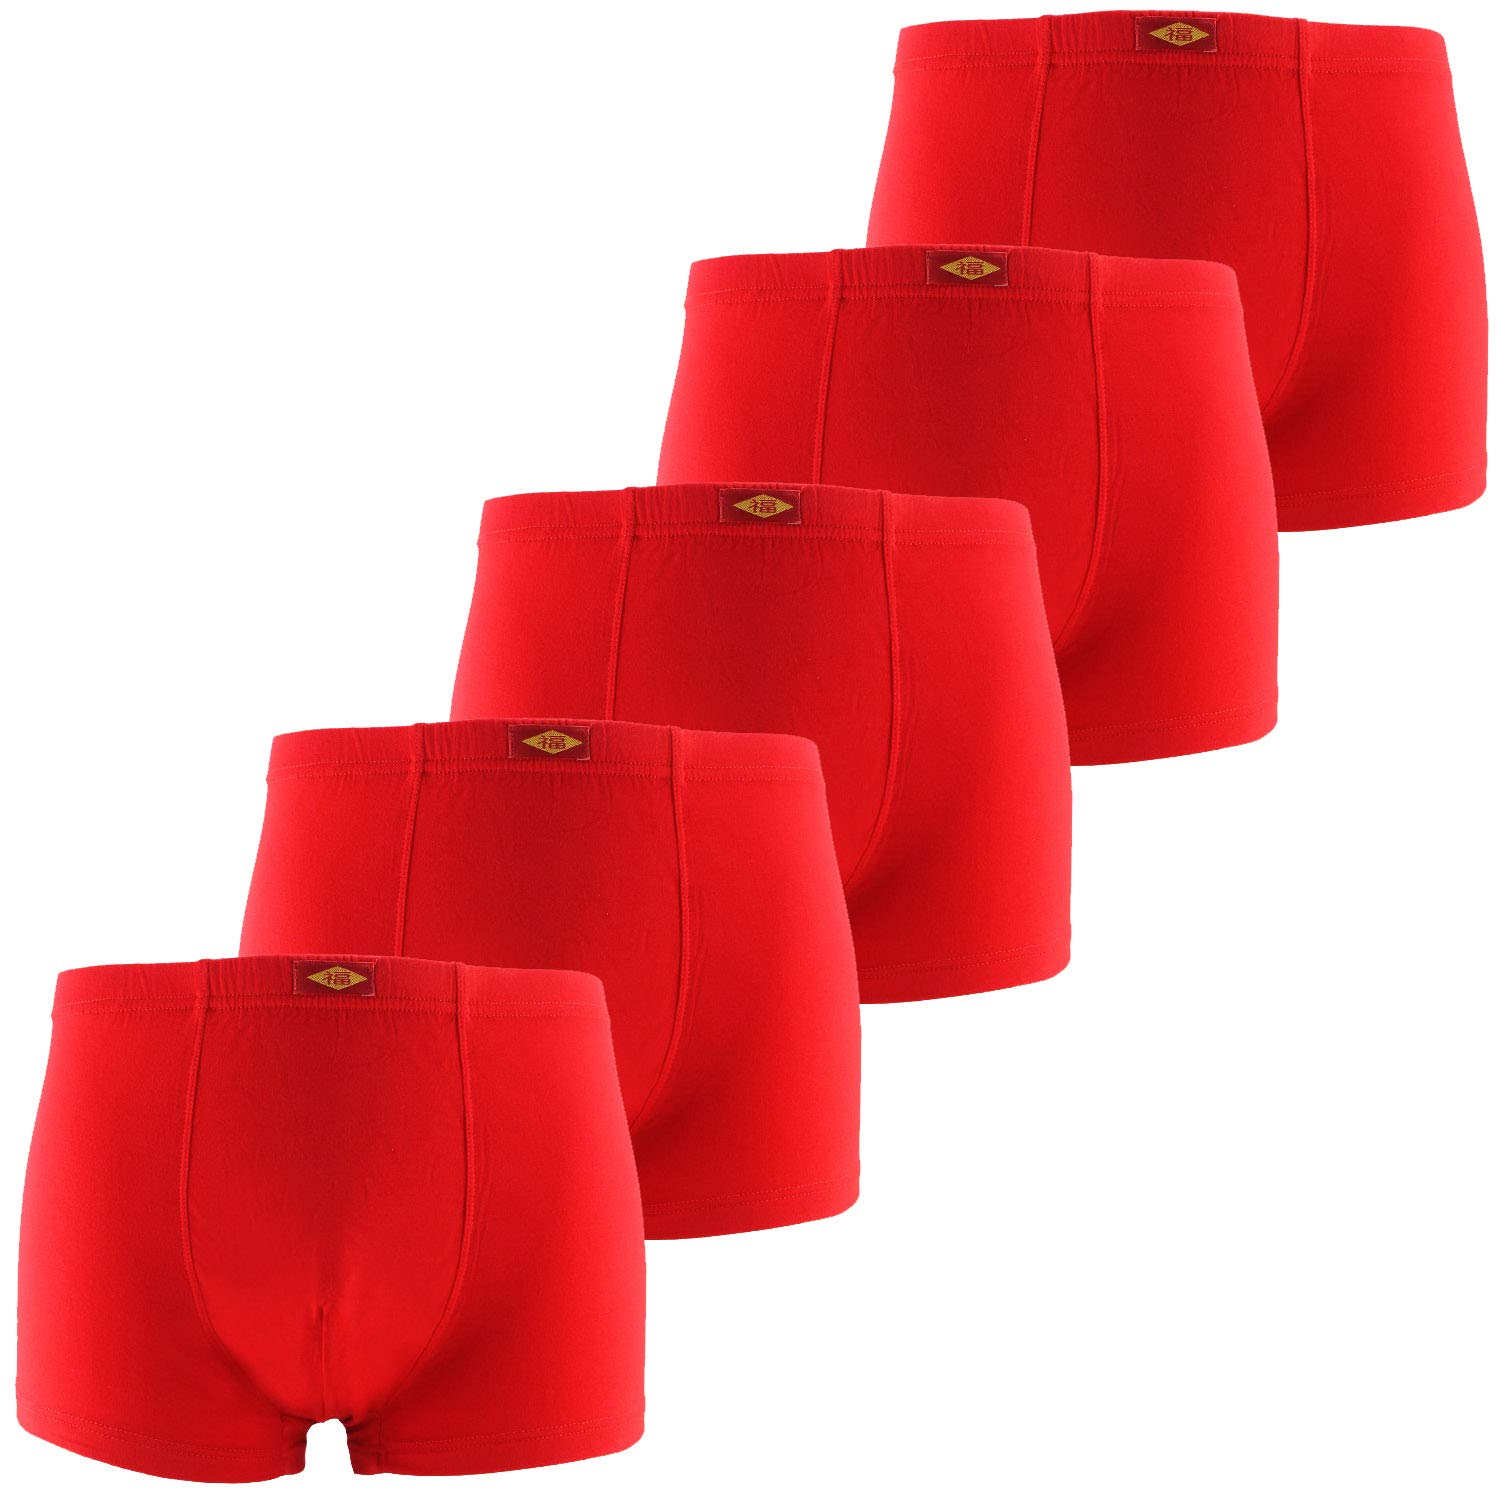 Men's Underwear Soft Bamboo Boxer Briefs  (16)